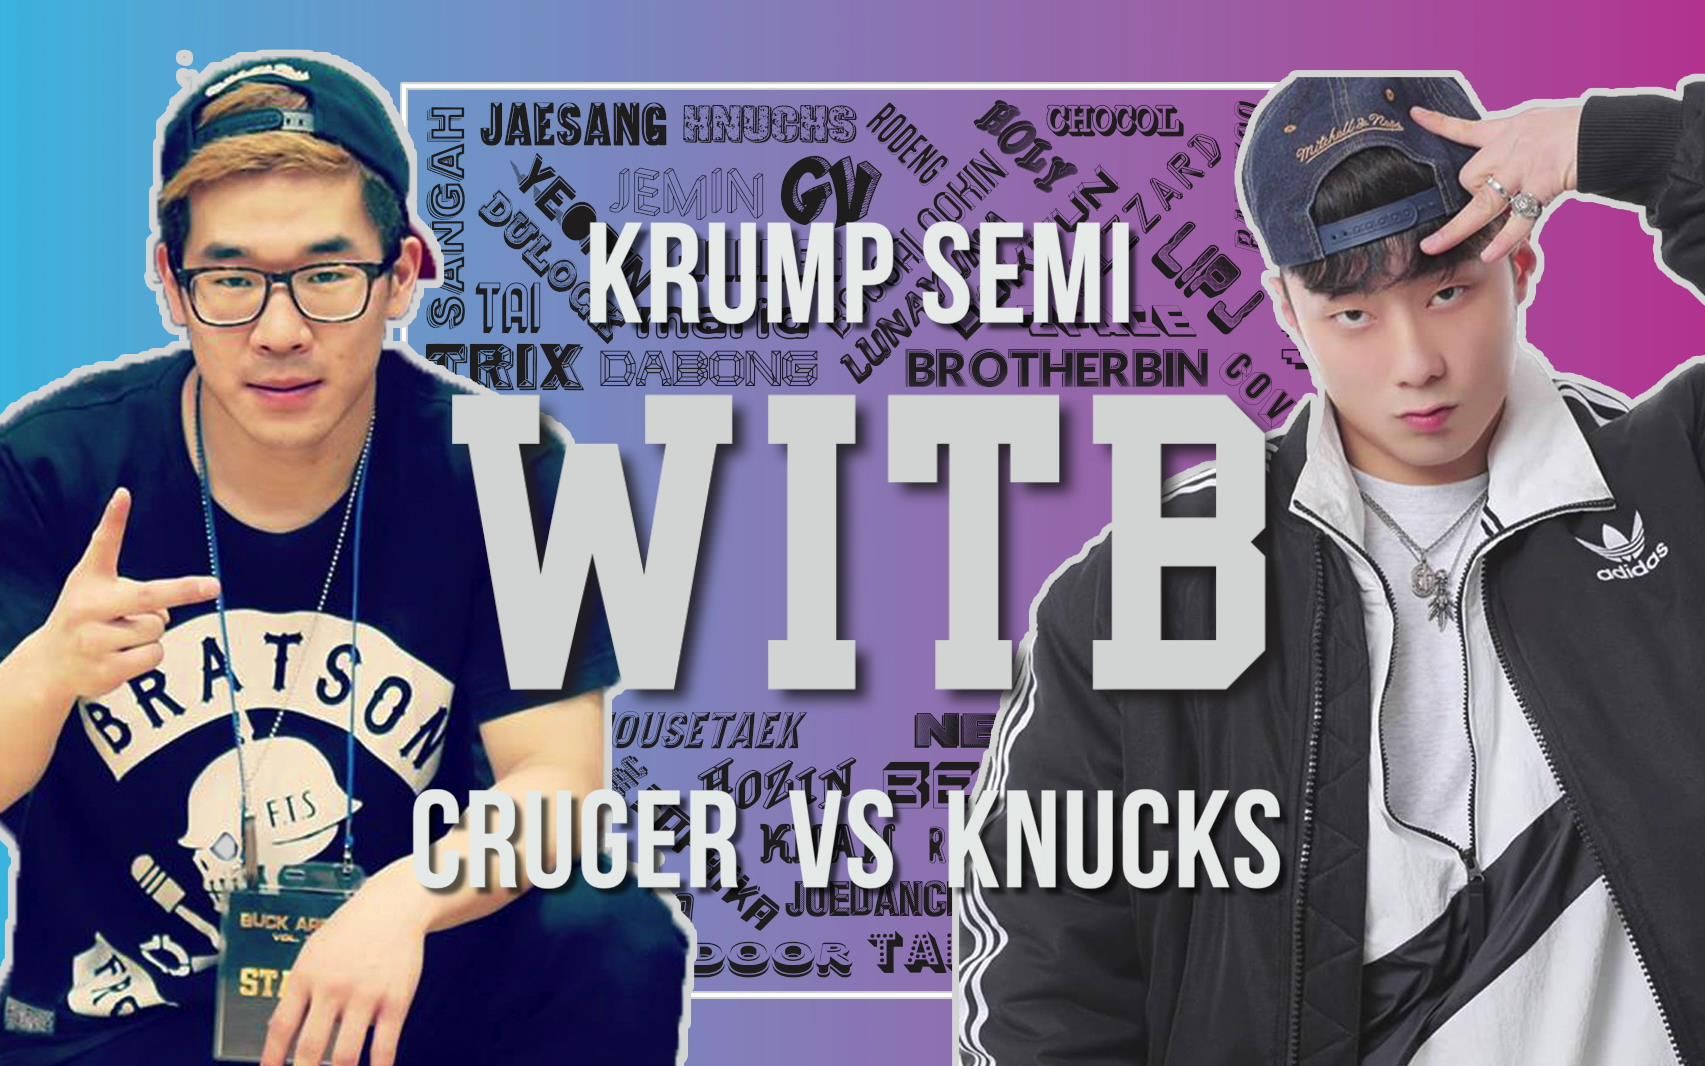 CRUGER vs KNUCKS｜Krump Semi @ WITB 2019